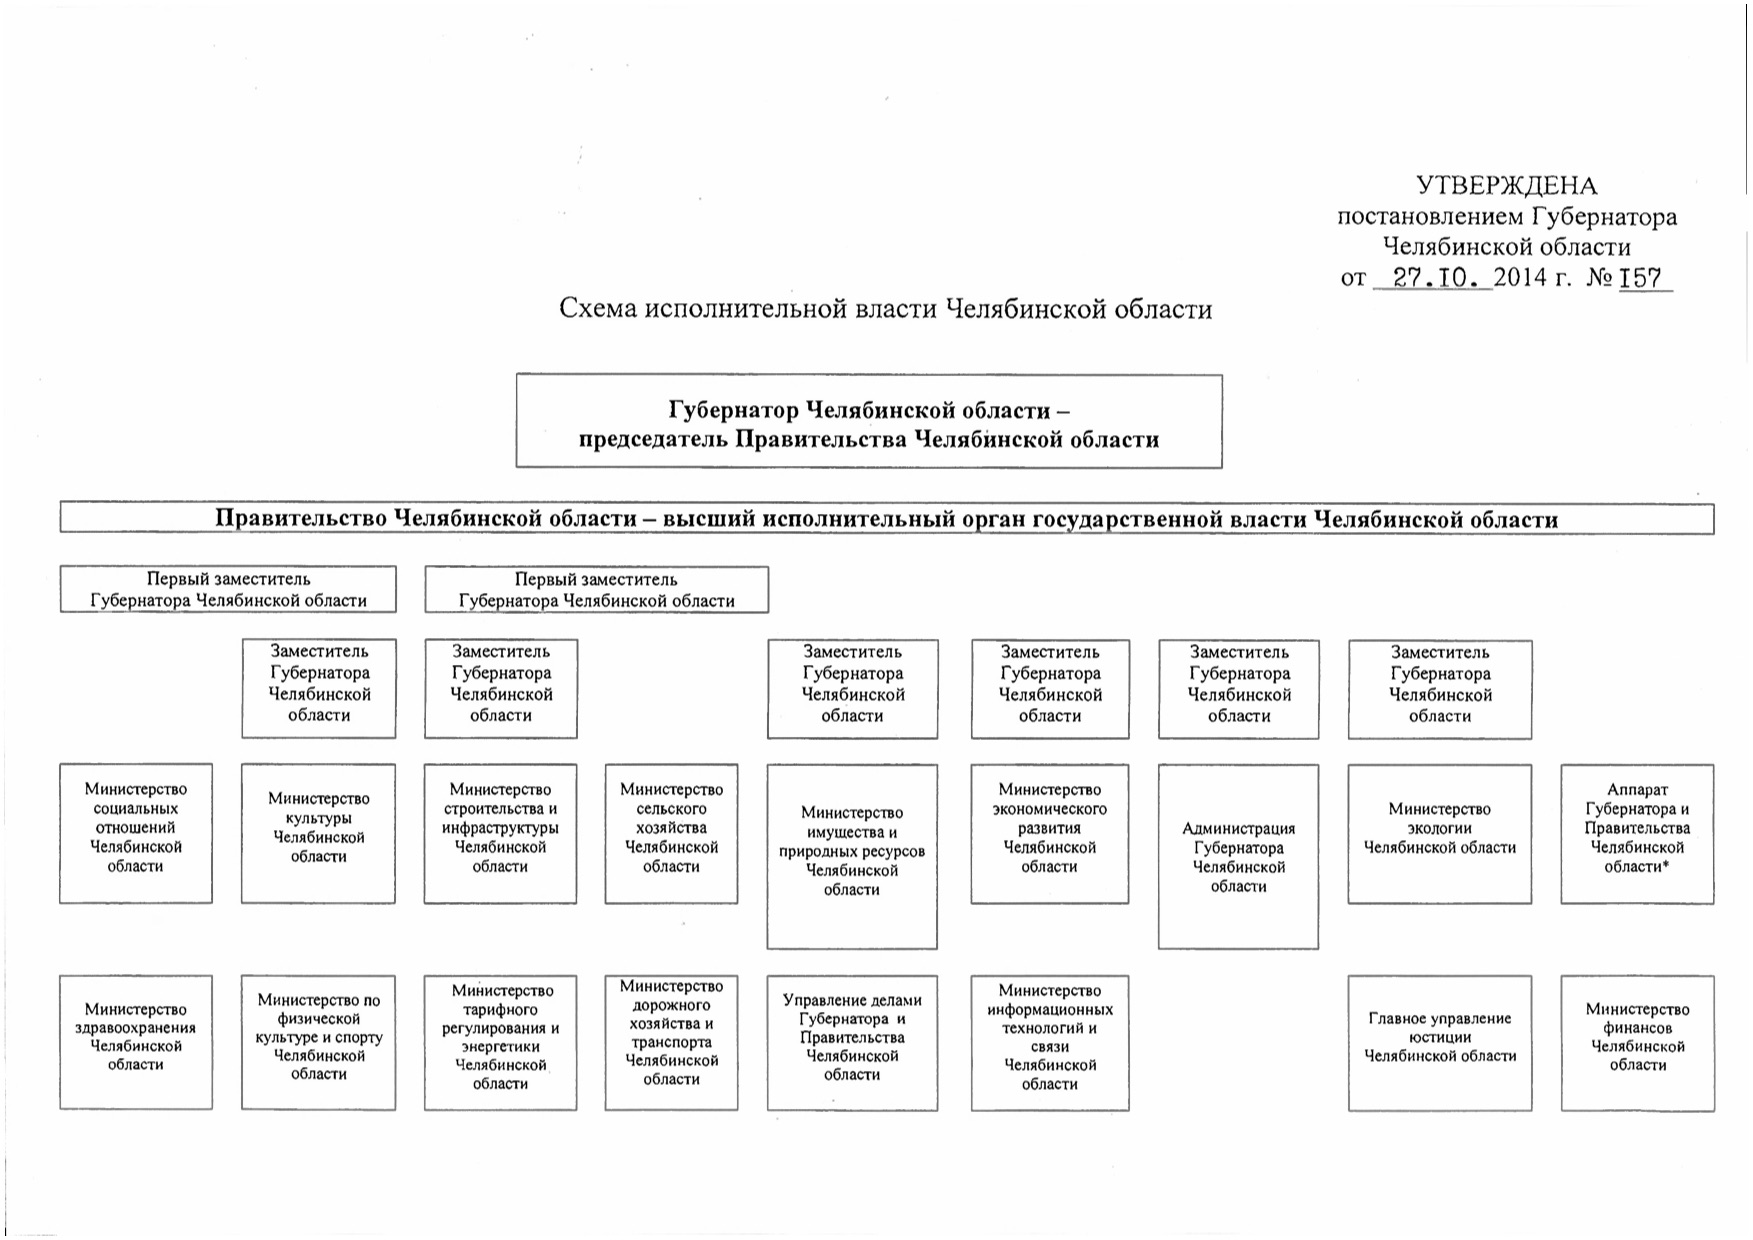 Структура власти в Челябинской области